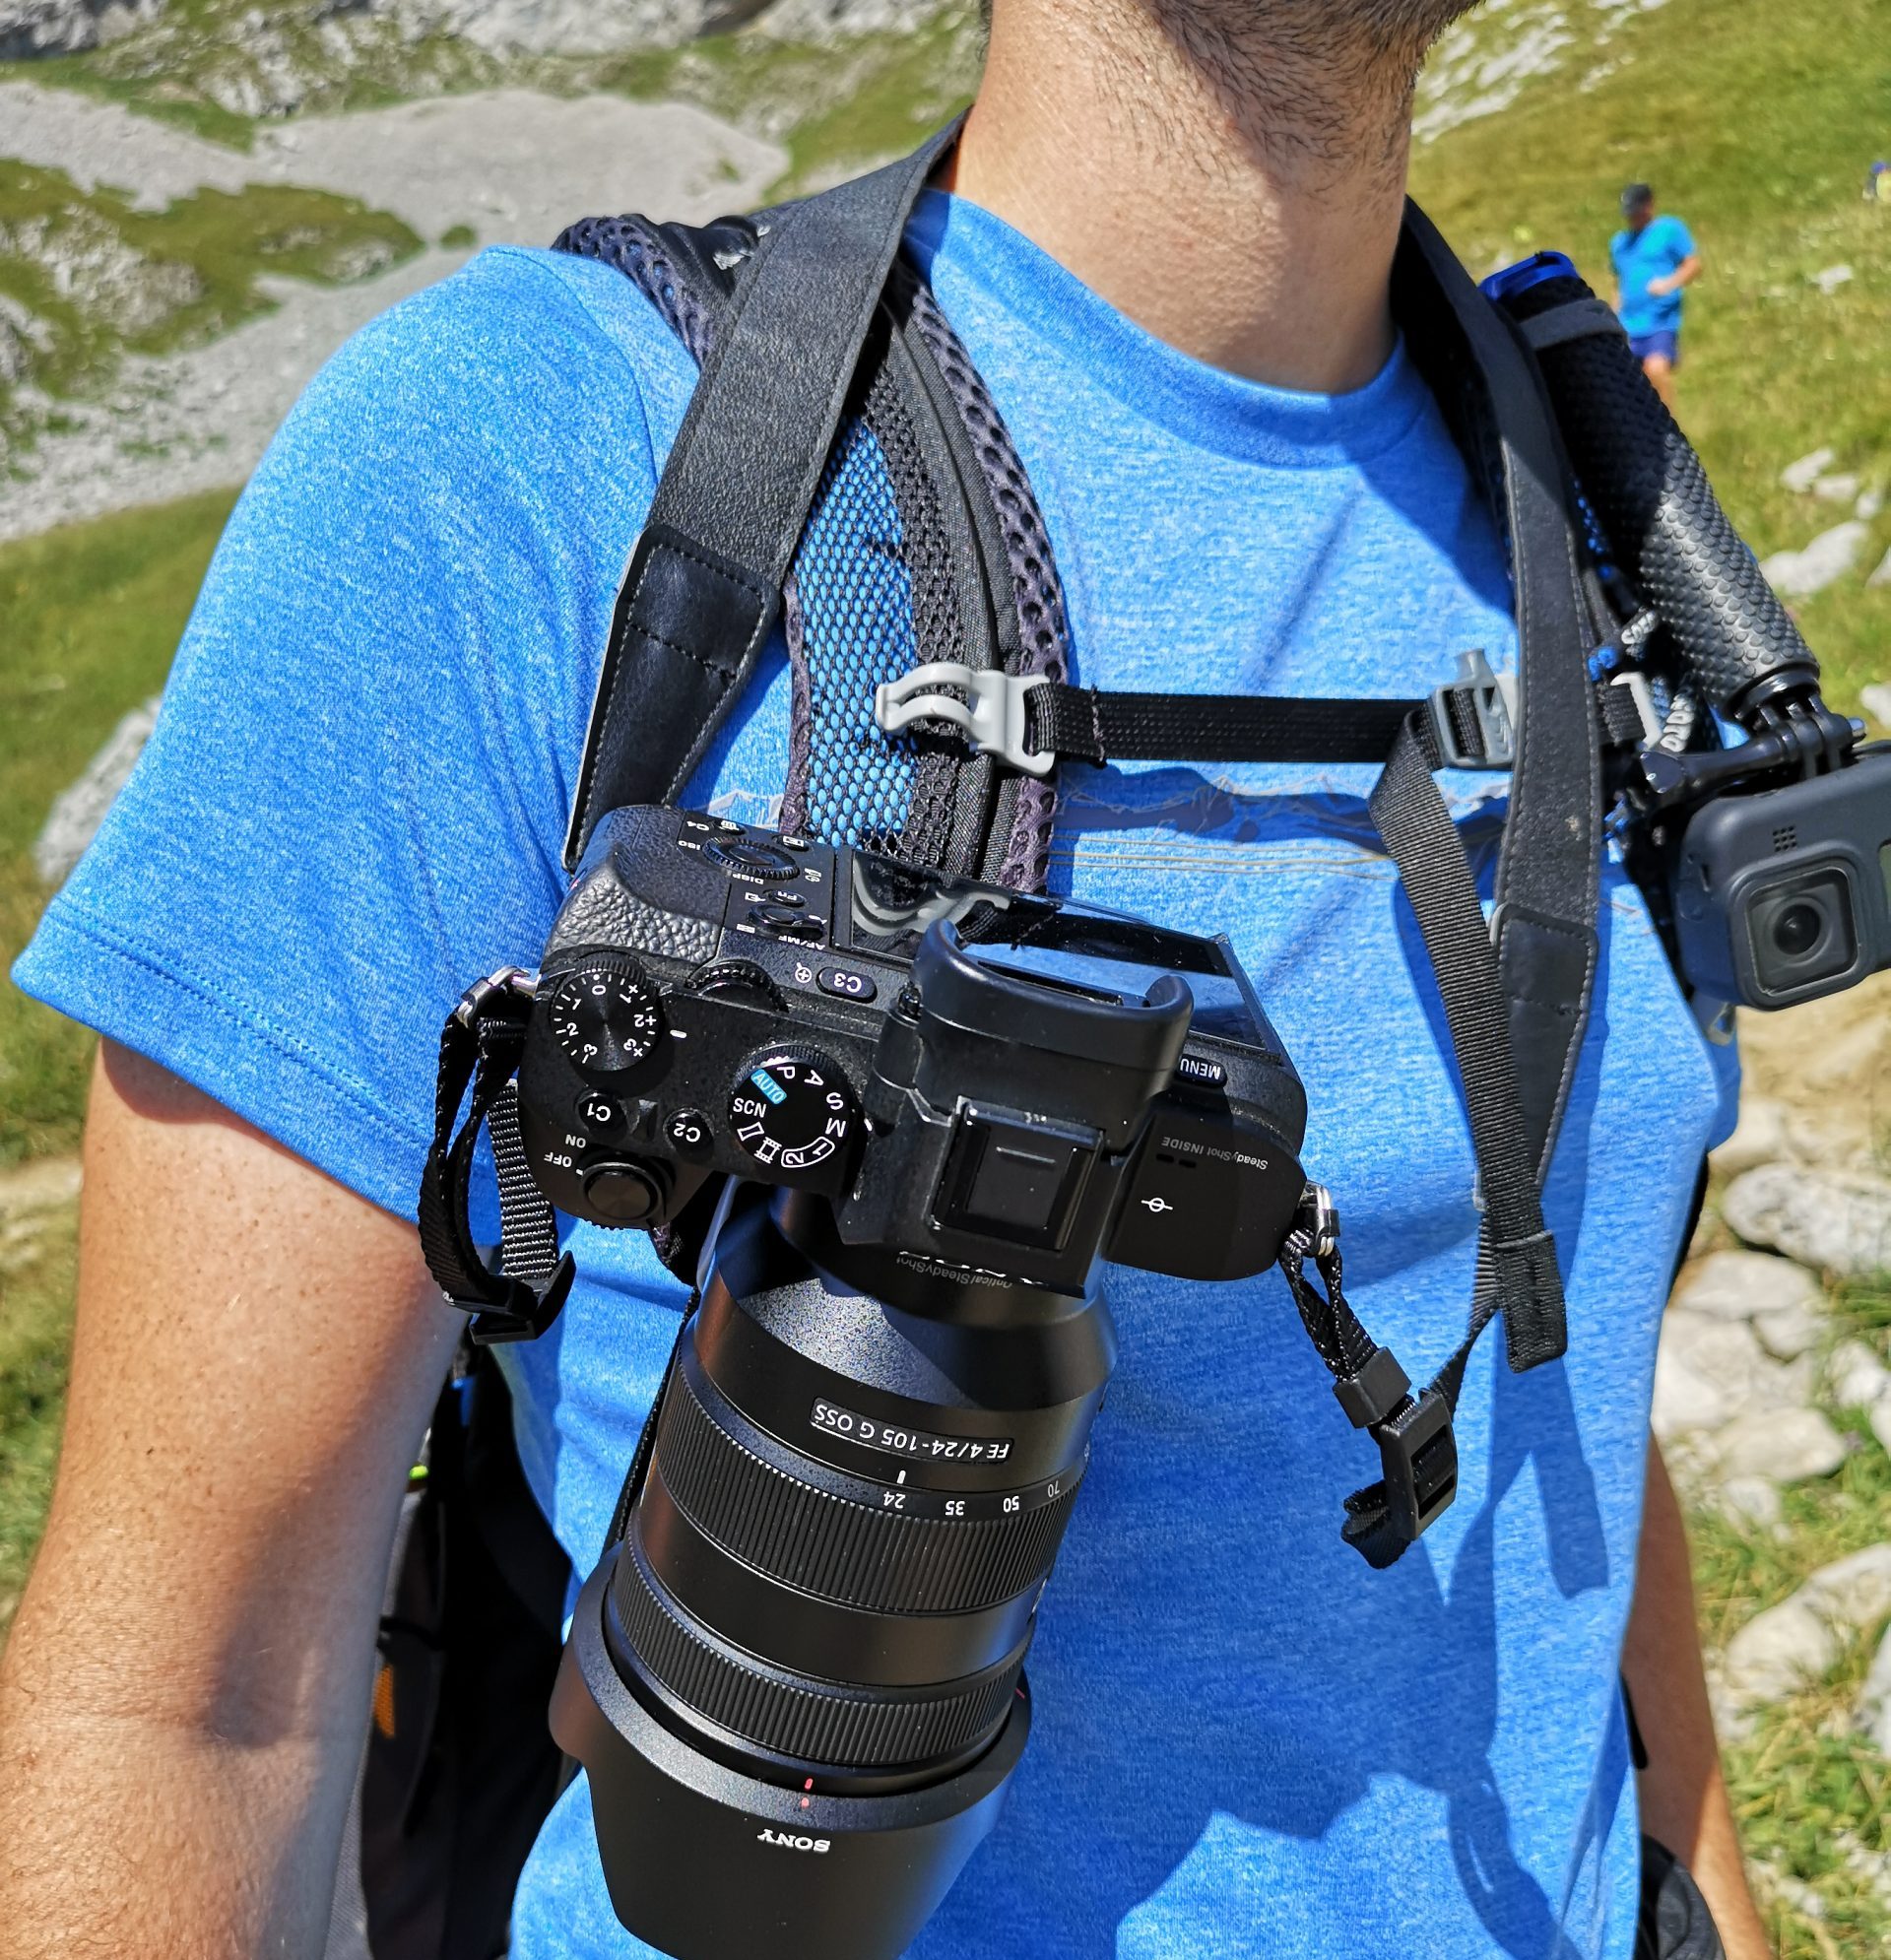 Comment porter son appareil photo - 1/6 - Support Peak Design Capture pour  sangle de sac 